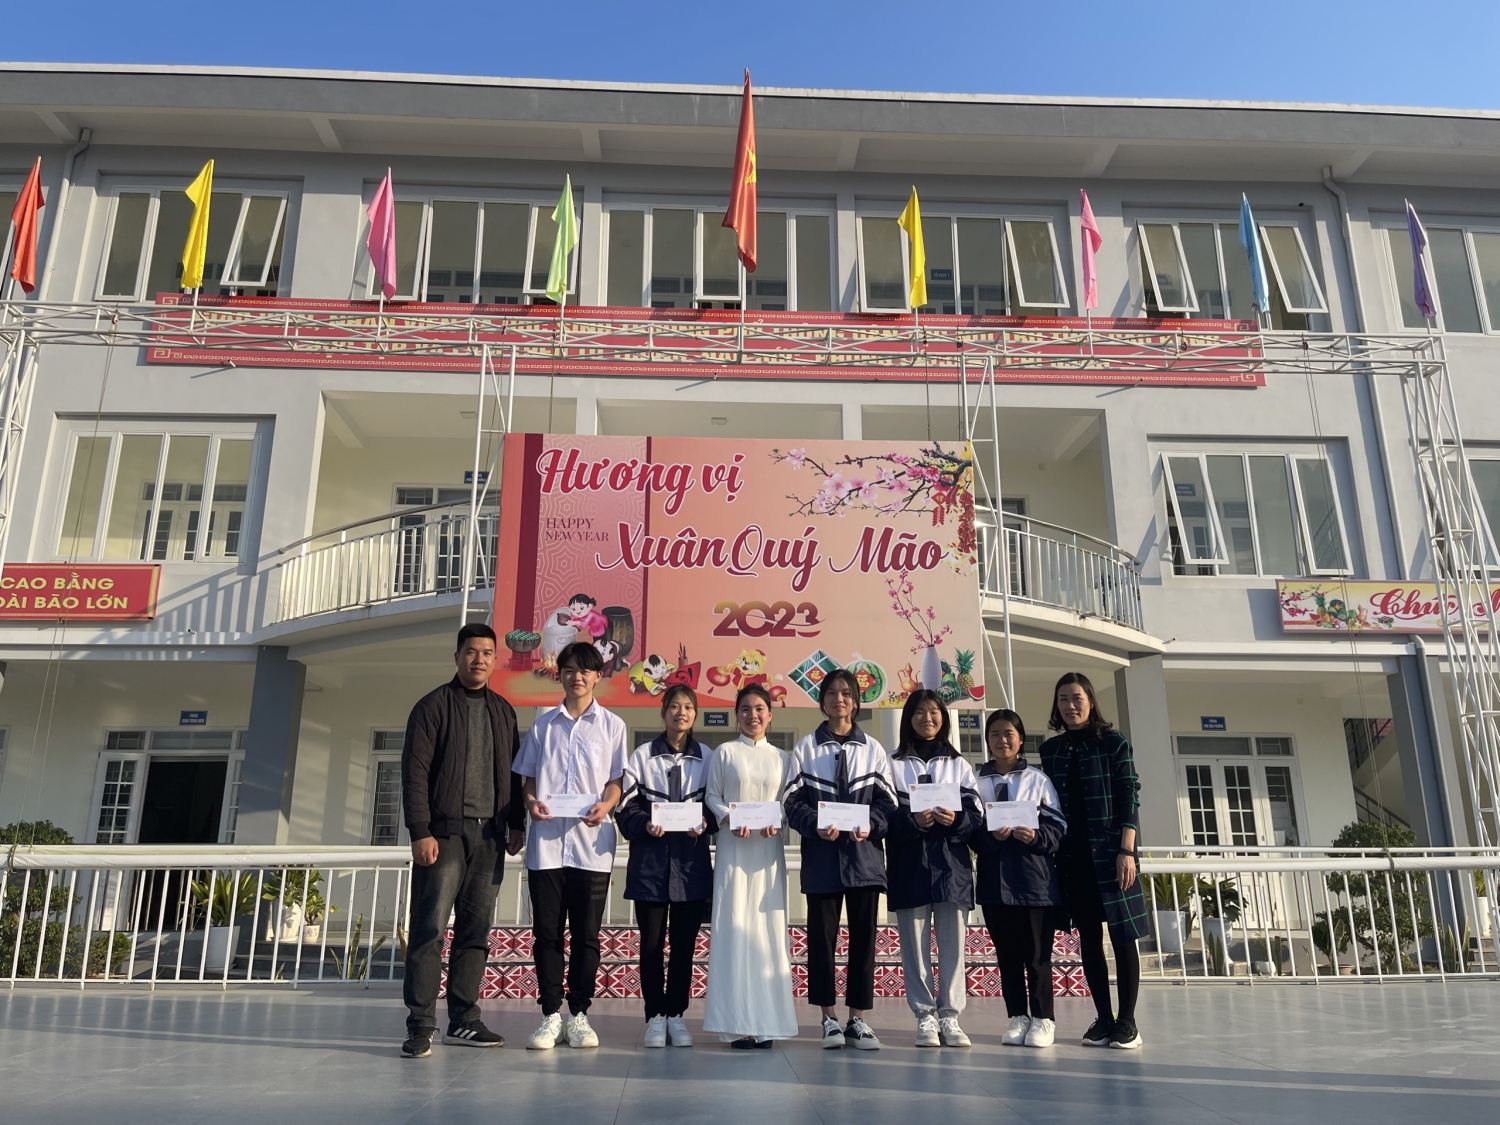 Đoàn Trường THPT DTNT tỉnh Cao Bằng tổ chức Hội xuân Quý Mão năm 2023.